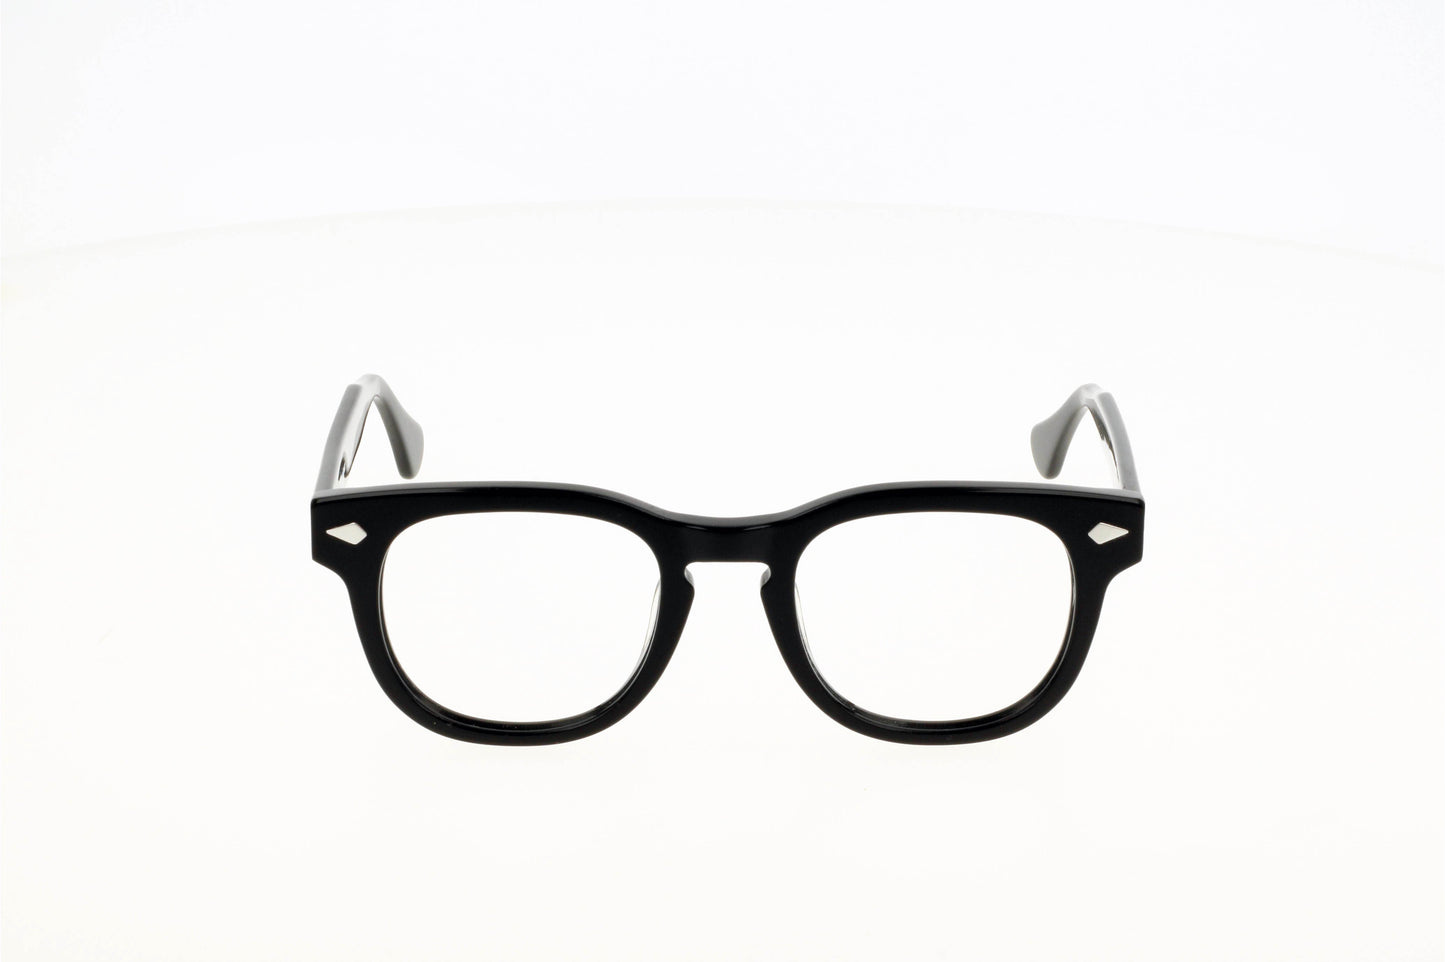 
                  
                    Originel eyewear France vous propose une lunette en acétate épais de couleur noire ou translucide verte. Elle est moderne, actuelle et tendance.
                  
                